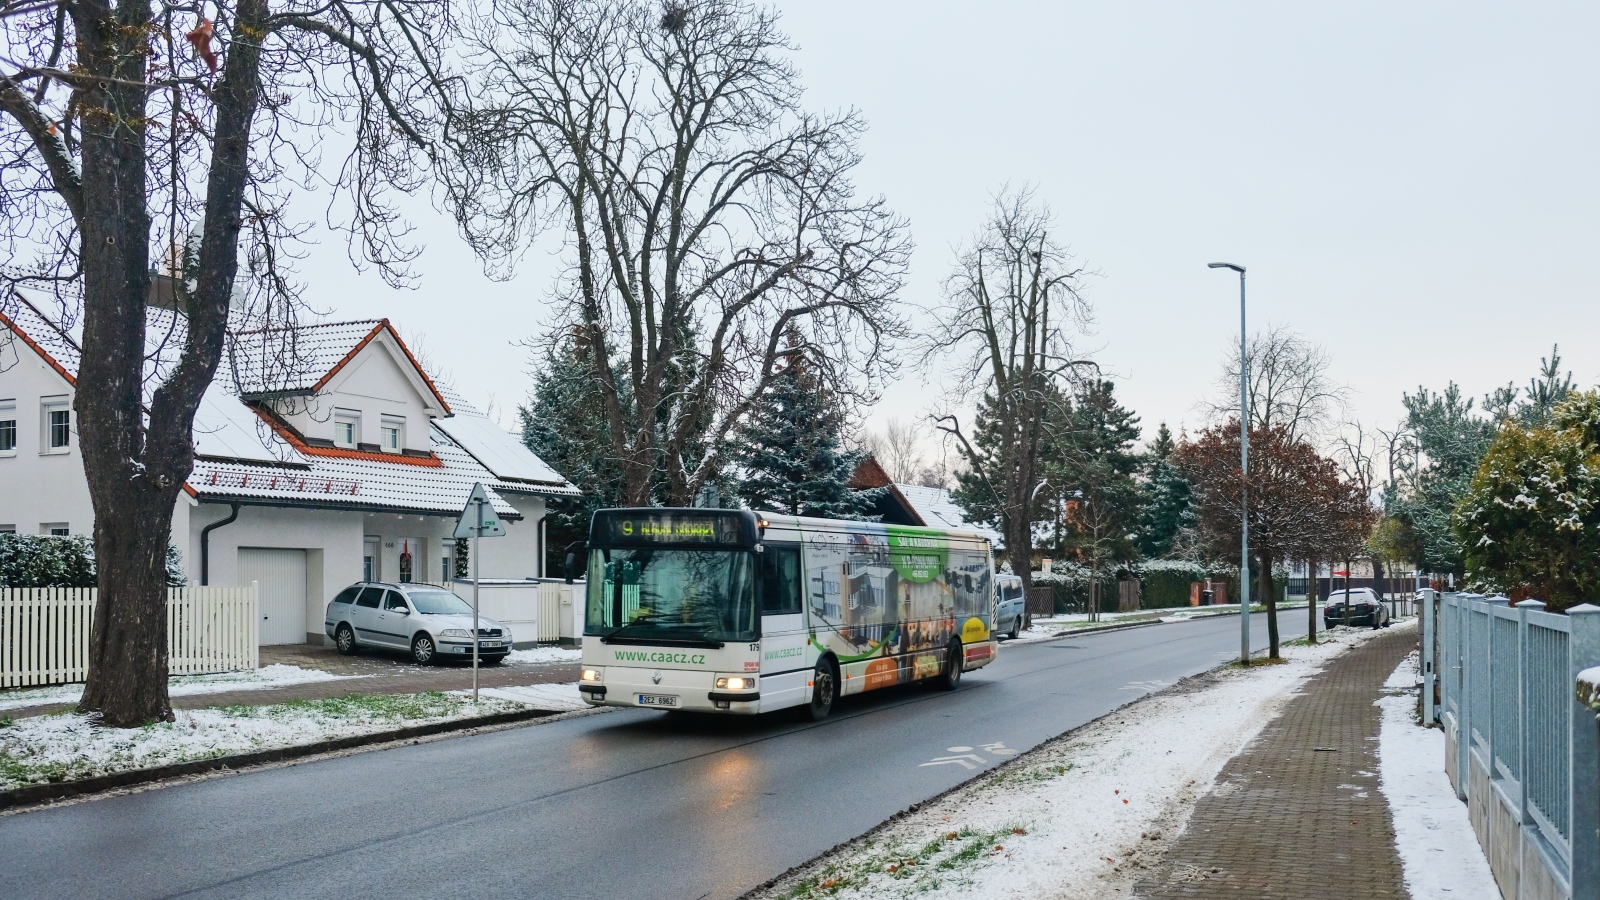 Pardubice, Karosa Citybus 12M.2071 (Irisbus) № 179